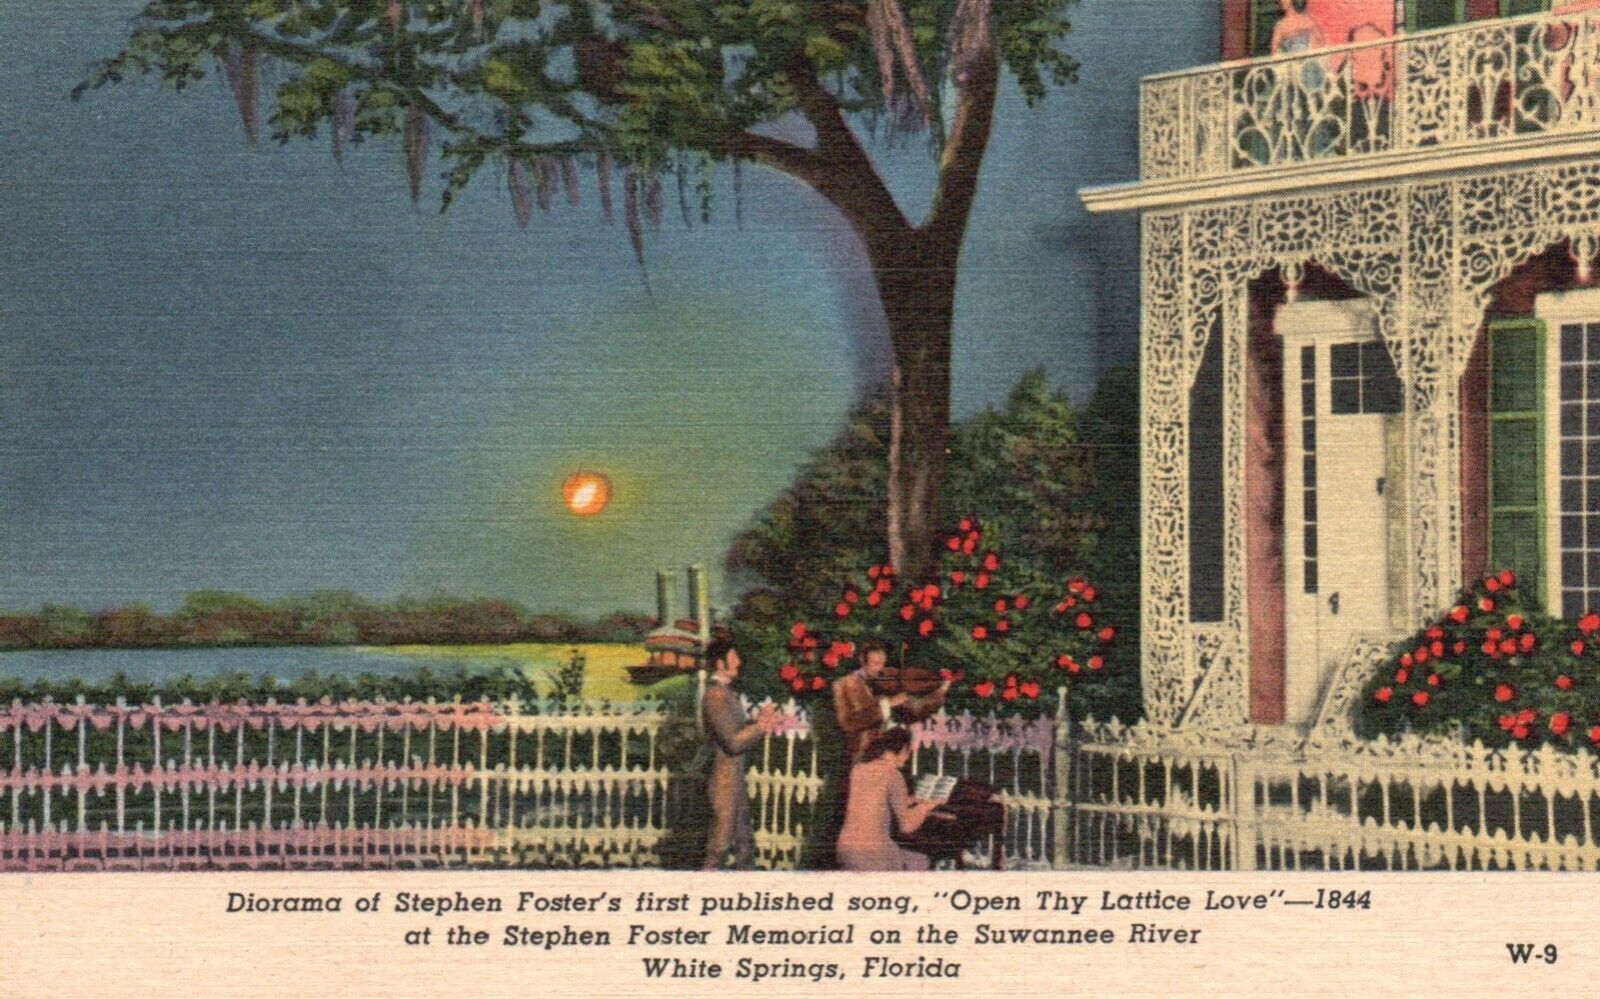 Postcard FL White Springs Stephen Foster Diorama Open Thy Lattice Love PC e6546